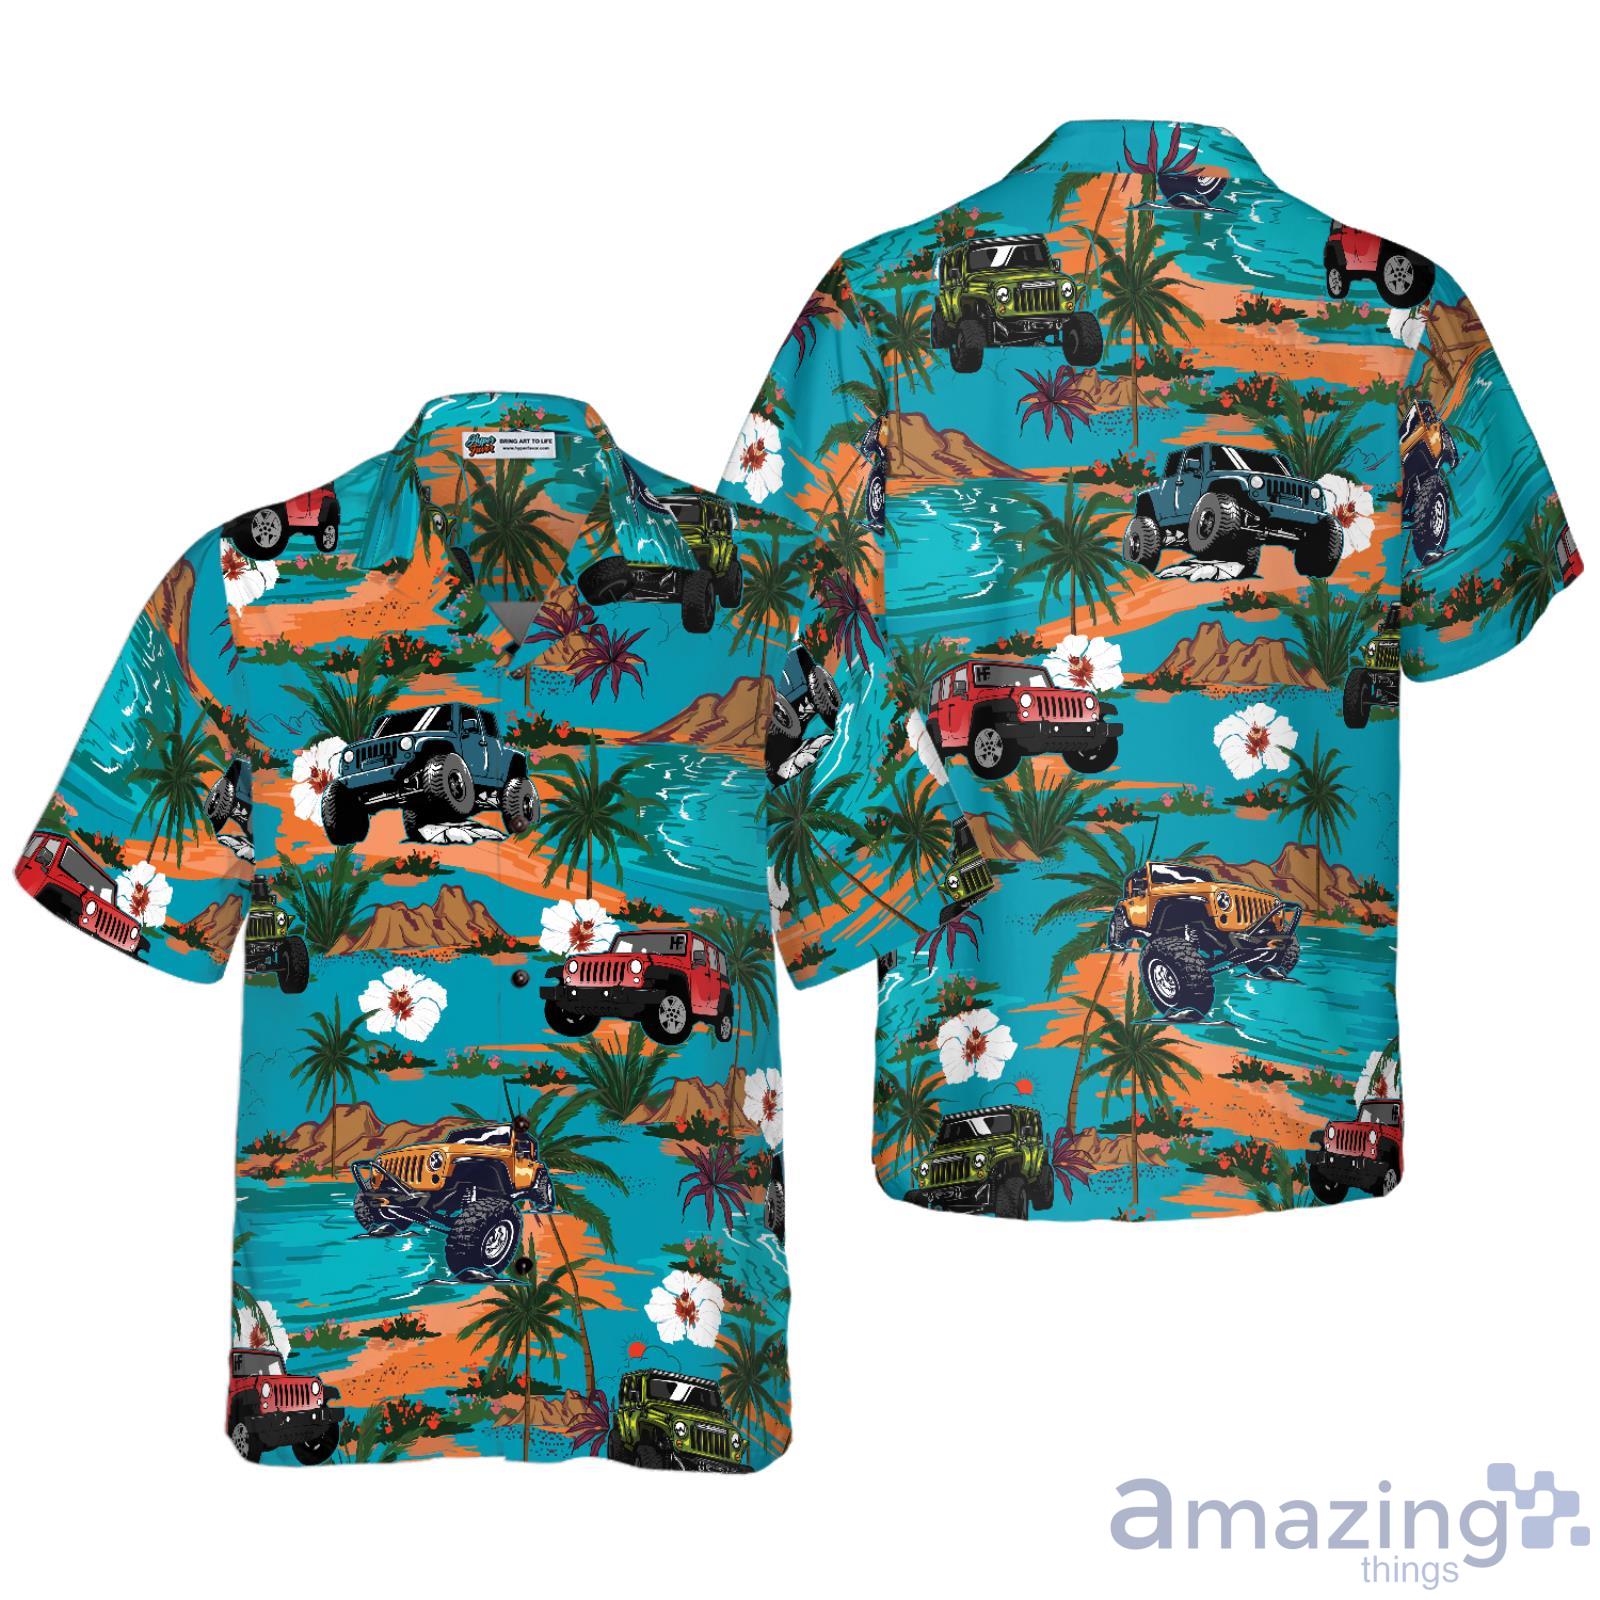 Vintage MLB Texas Rangers Hawaiian Shirt Aloha Concept Trendy Summer Gift